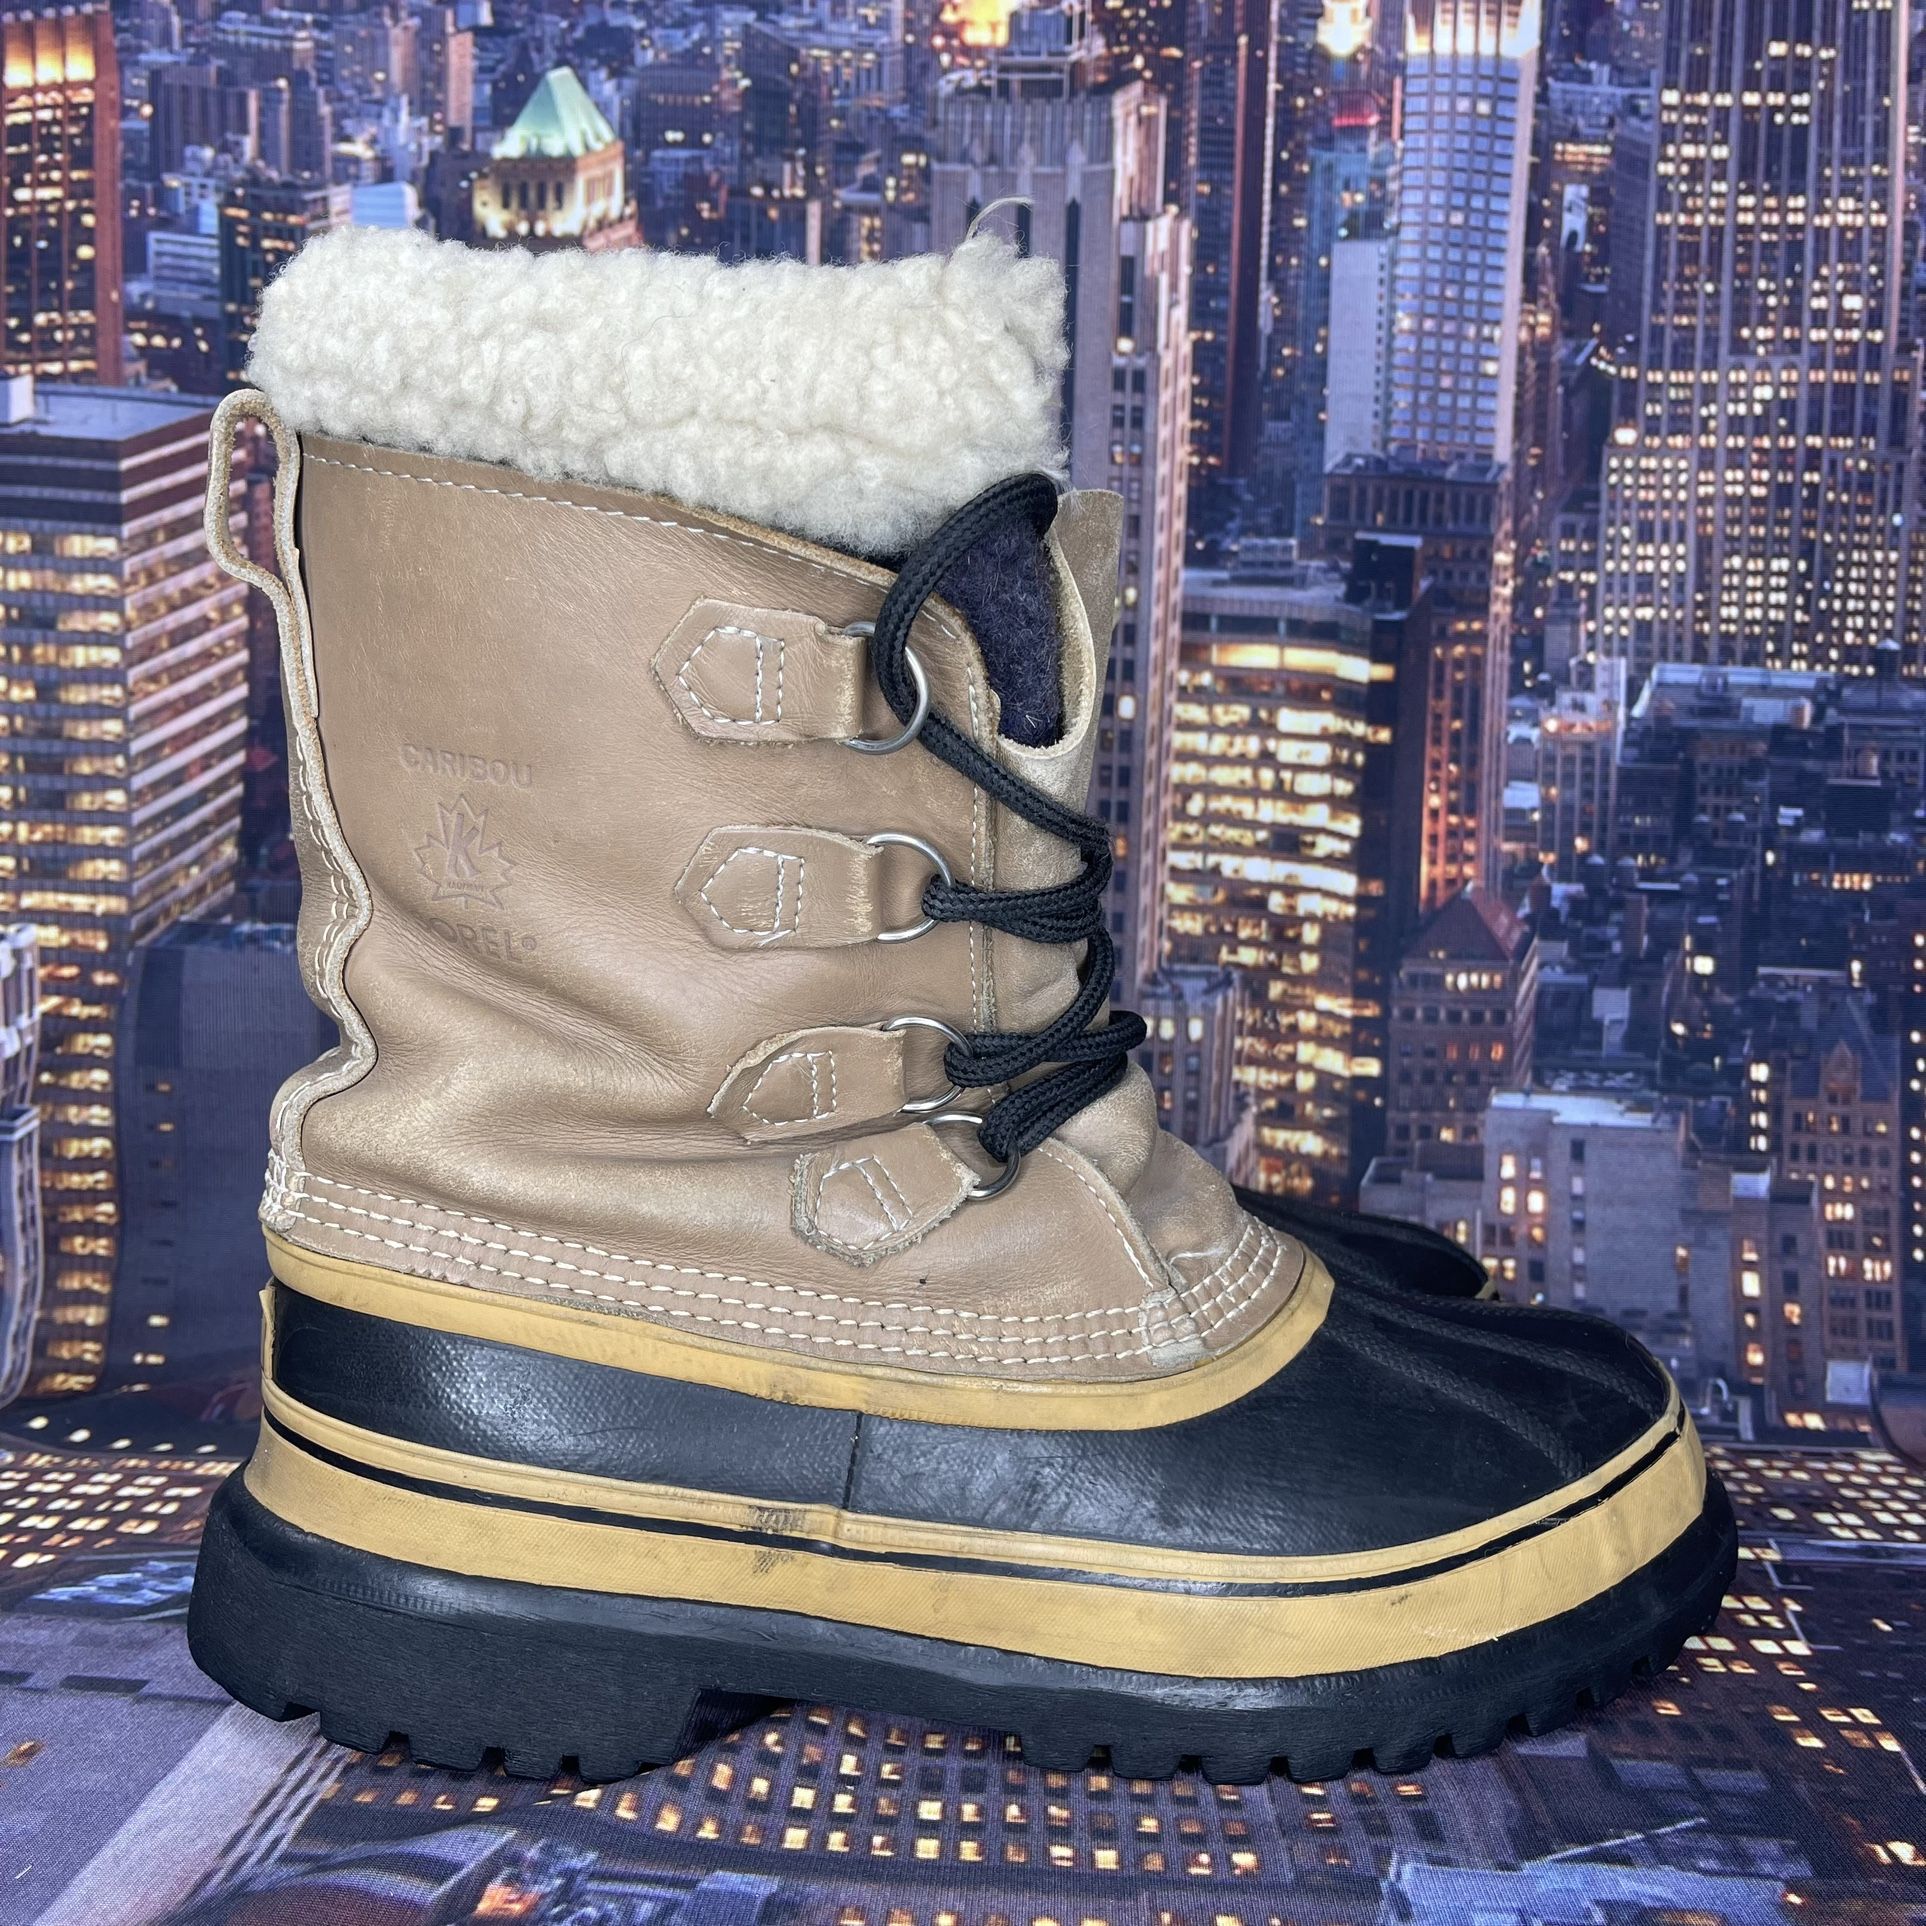 SOREL Caribou Snow Duck Boots Men’s Size 8 Tan/Brown Waterproof w/Felt Lining